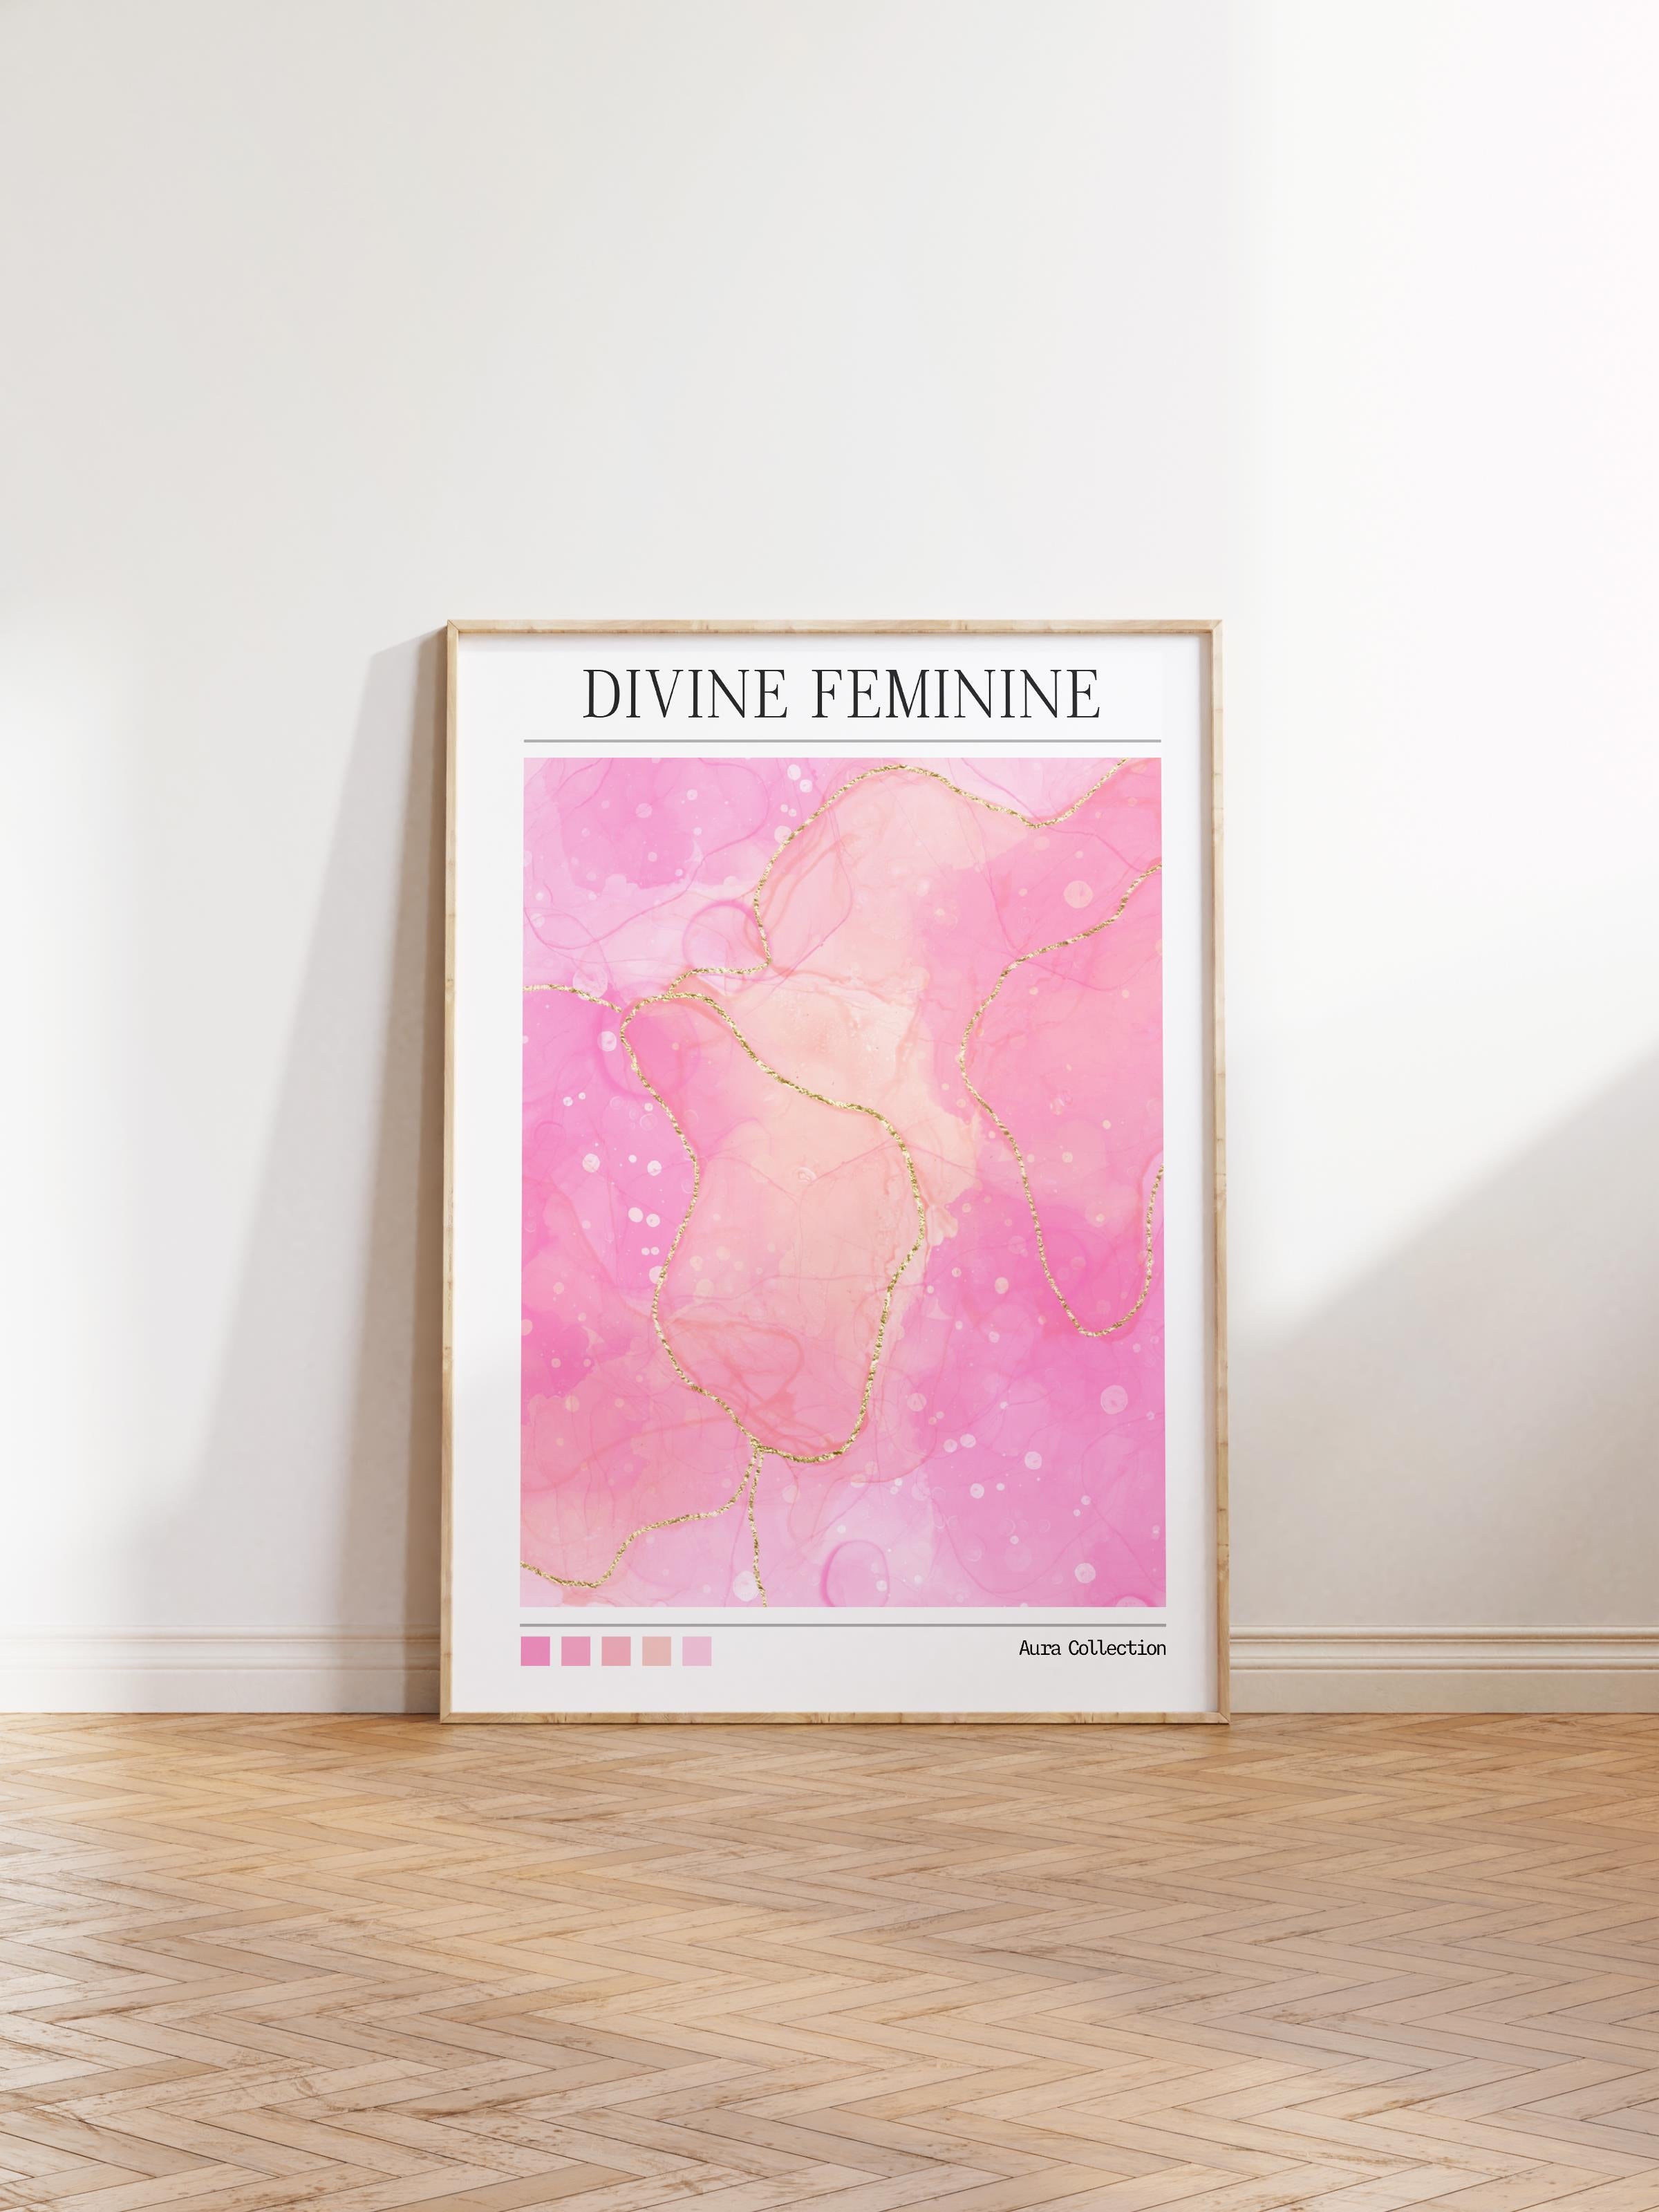 Çerçevesiz Poster, Aura Serisi NO:164 - Divine Feminine, Melek Numaraları, Renkli Poster